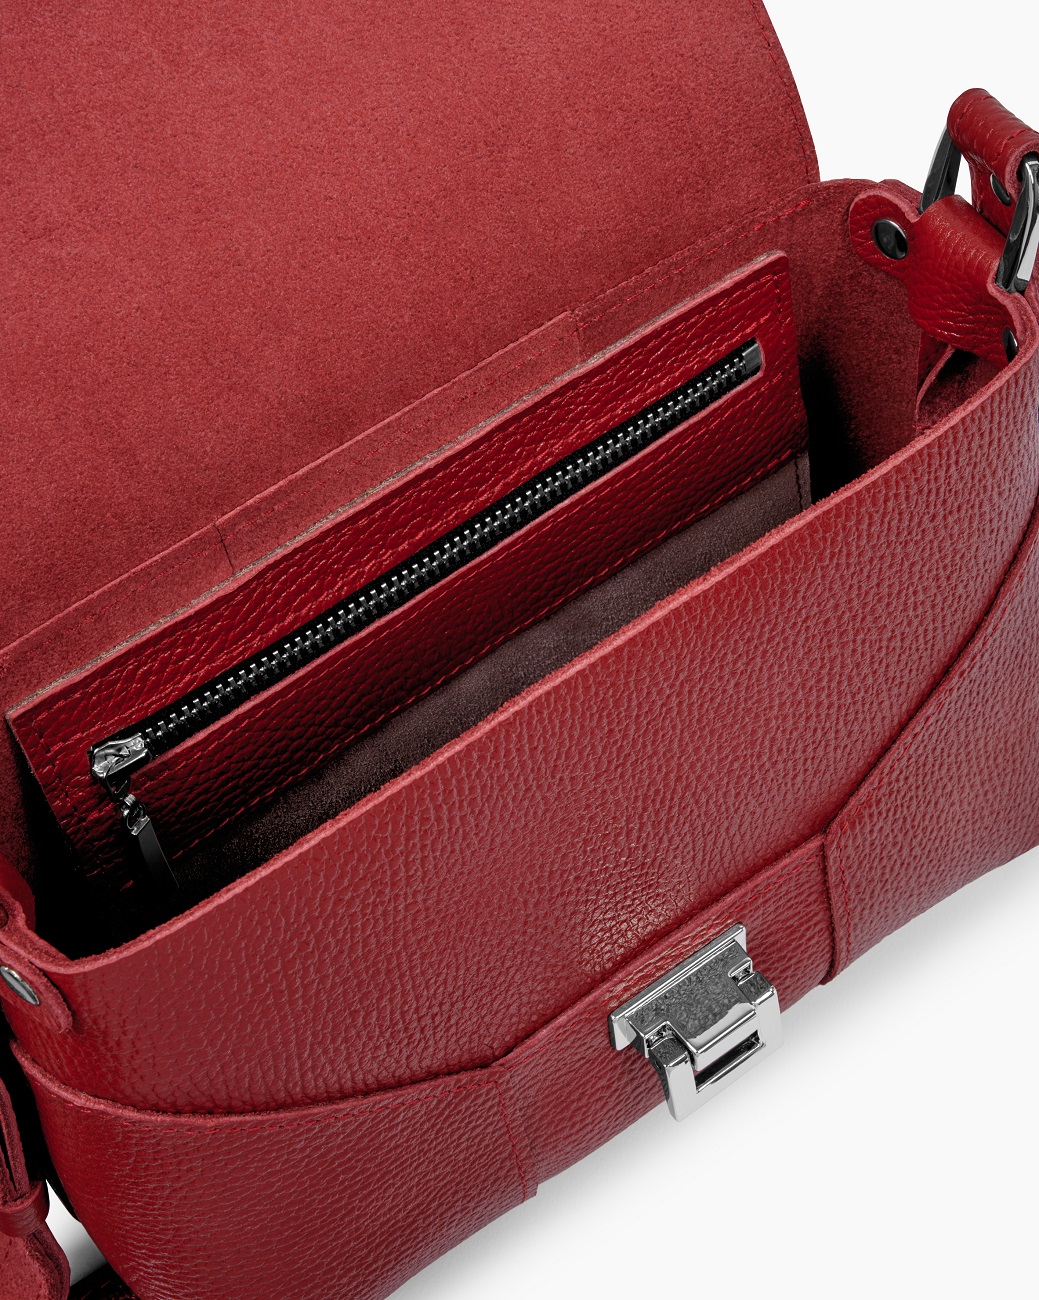 Женская сумка через плечо из натуральной кожи красная A011 ruby grain